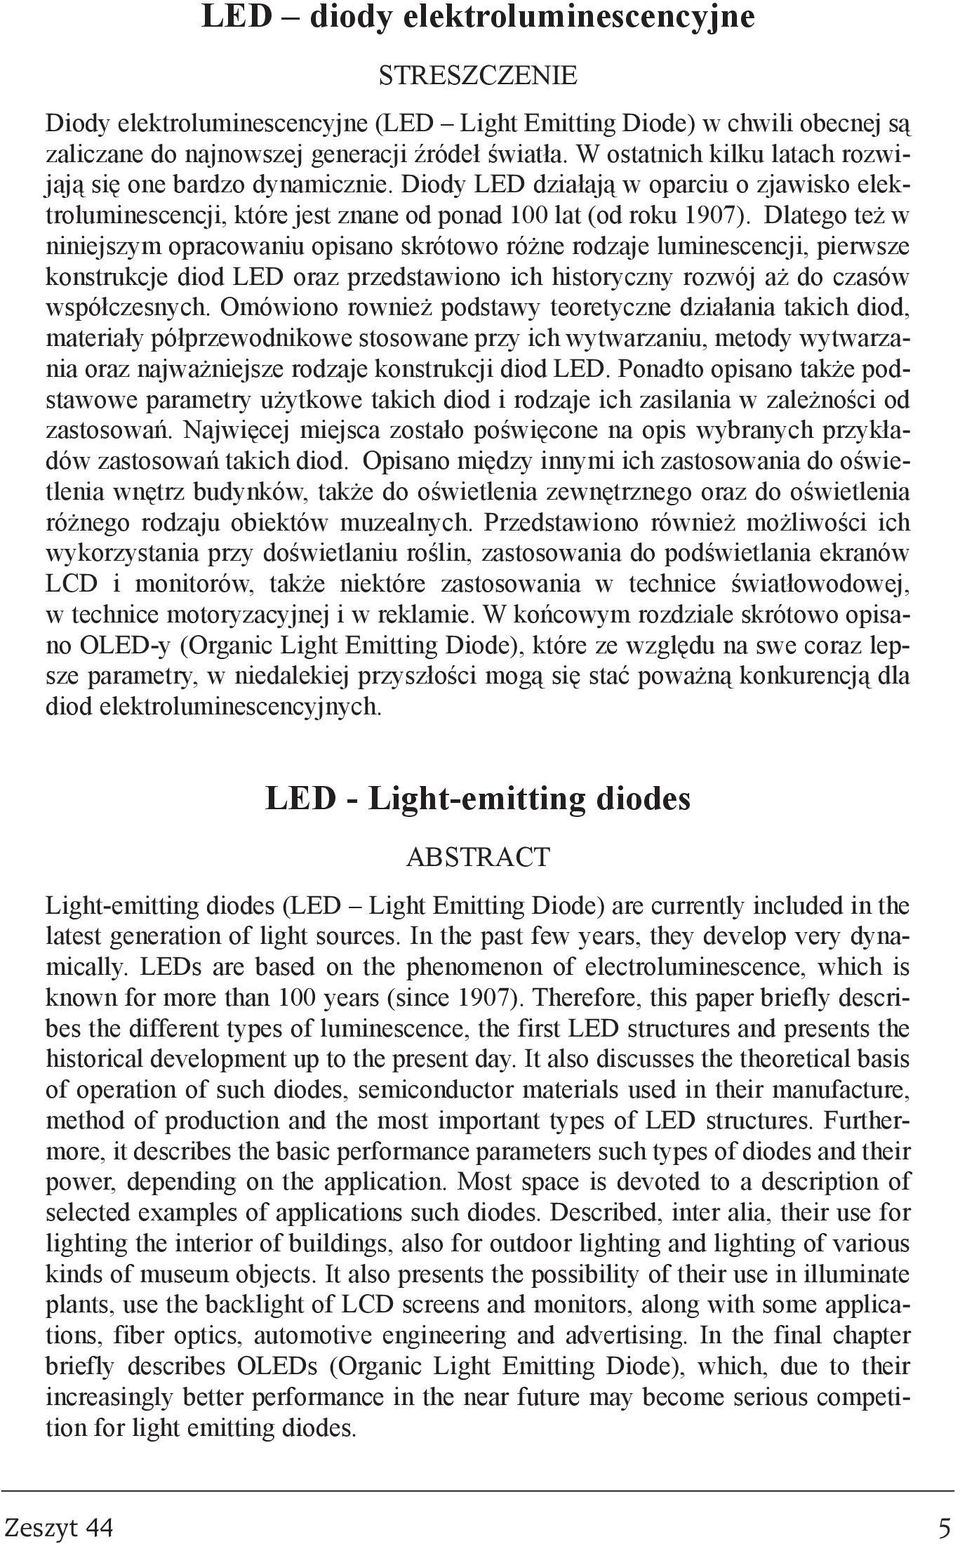 Dlatego te w niniejszym opracowaniu opisano skrótowo ró ne rodzaje luminescencji, pierwsze konstrukcje diod LED oraz przedstawiono ich historyczny rozwój a do czasów wspó³czesnych.